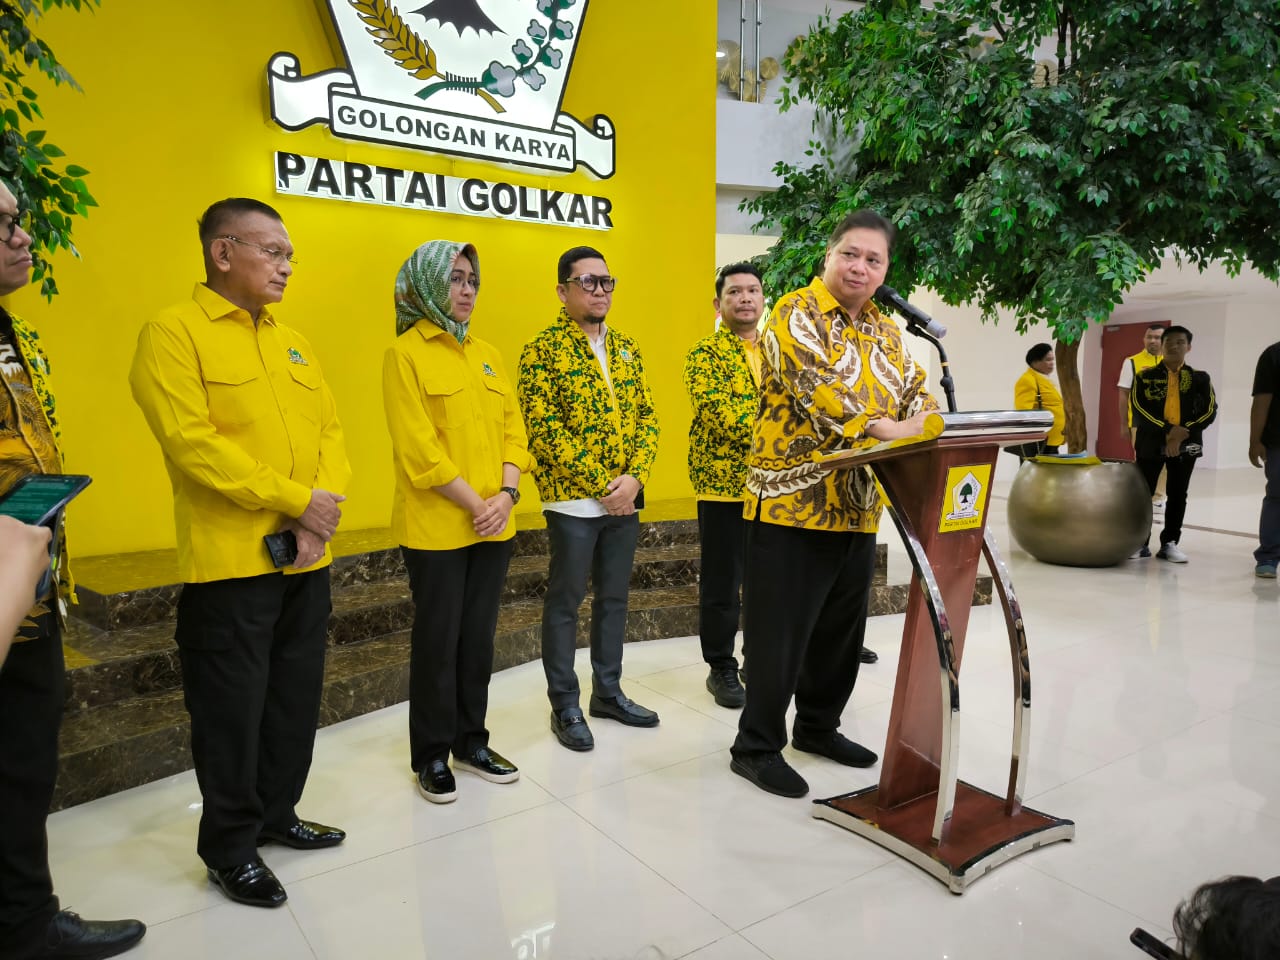 Partai Golkar Persiapkan Ribuan Calon Kepala Daerah, Ada Airin, Ridwan Kamil, dan Khofifah